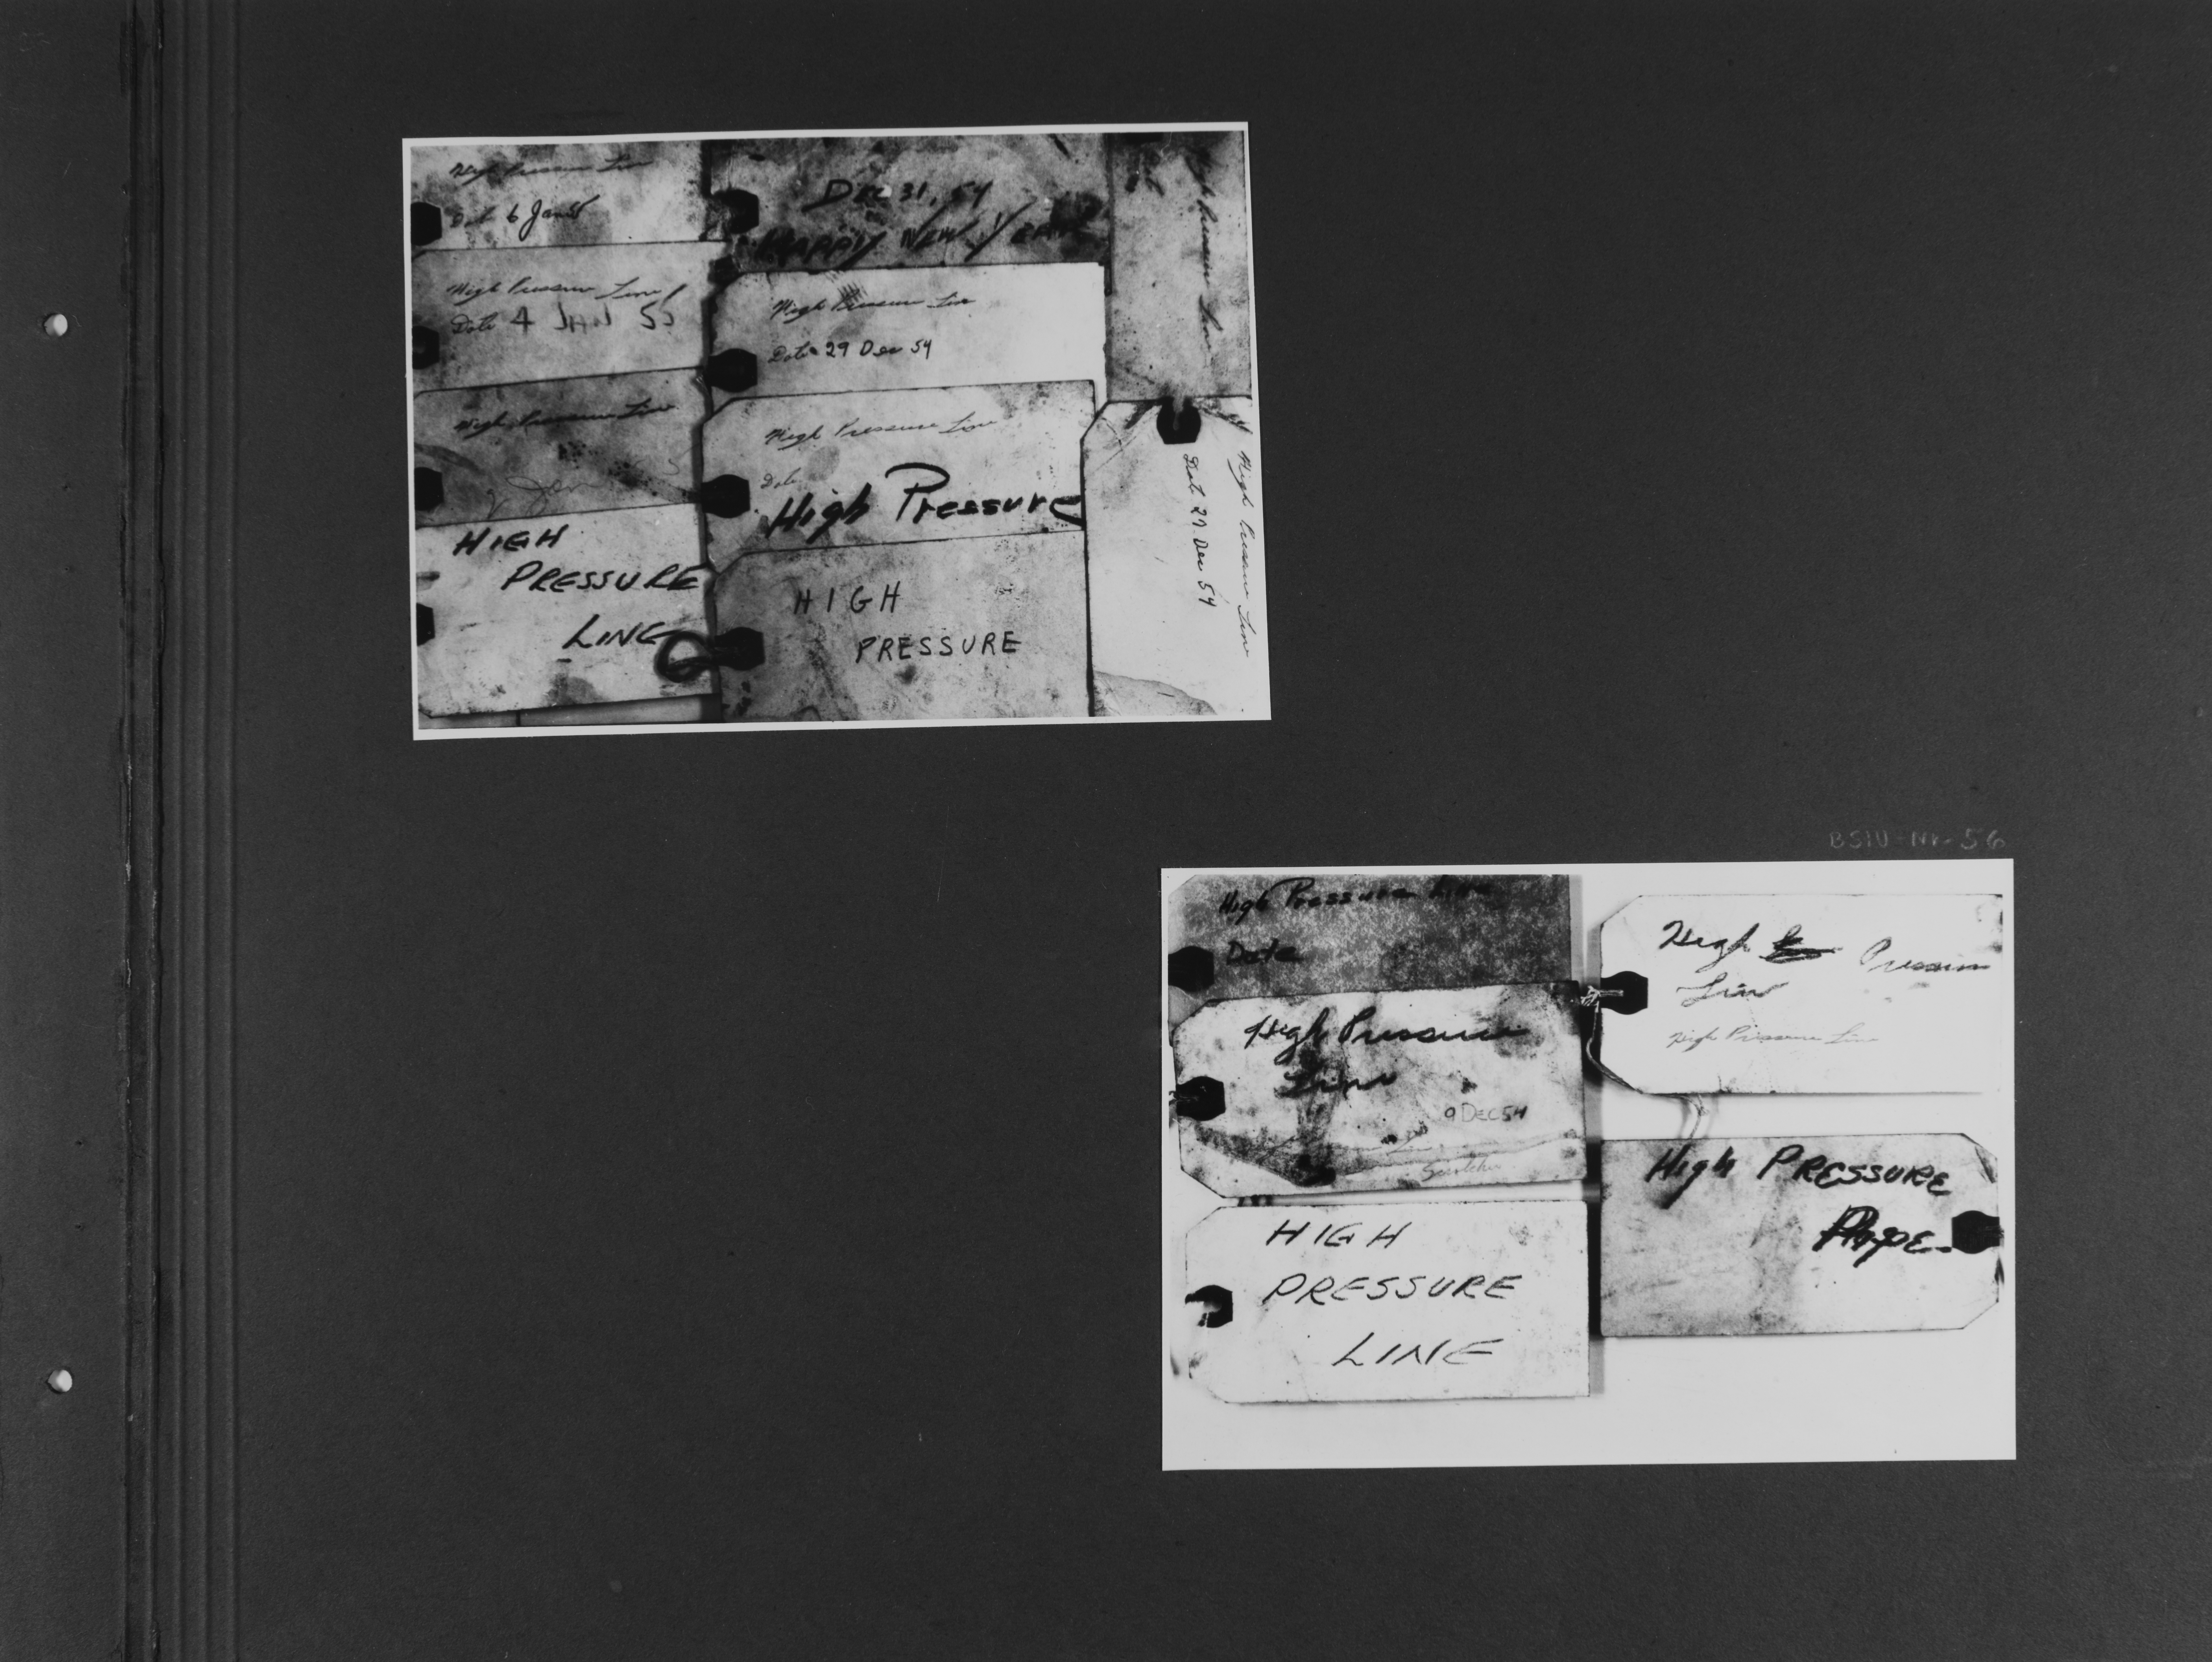 [Bild 1 und 2: Mehrere Etiketten nebeneinander gereiht. Sie sind alle in Englischer Sprache von Hand beschriftet, nur die wenigstens sind mit einem Datum (Dezember 1954 - Januar 1955) versehen.]